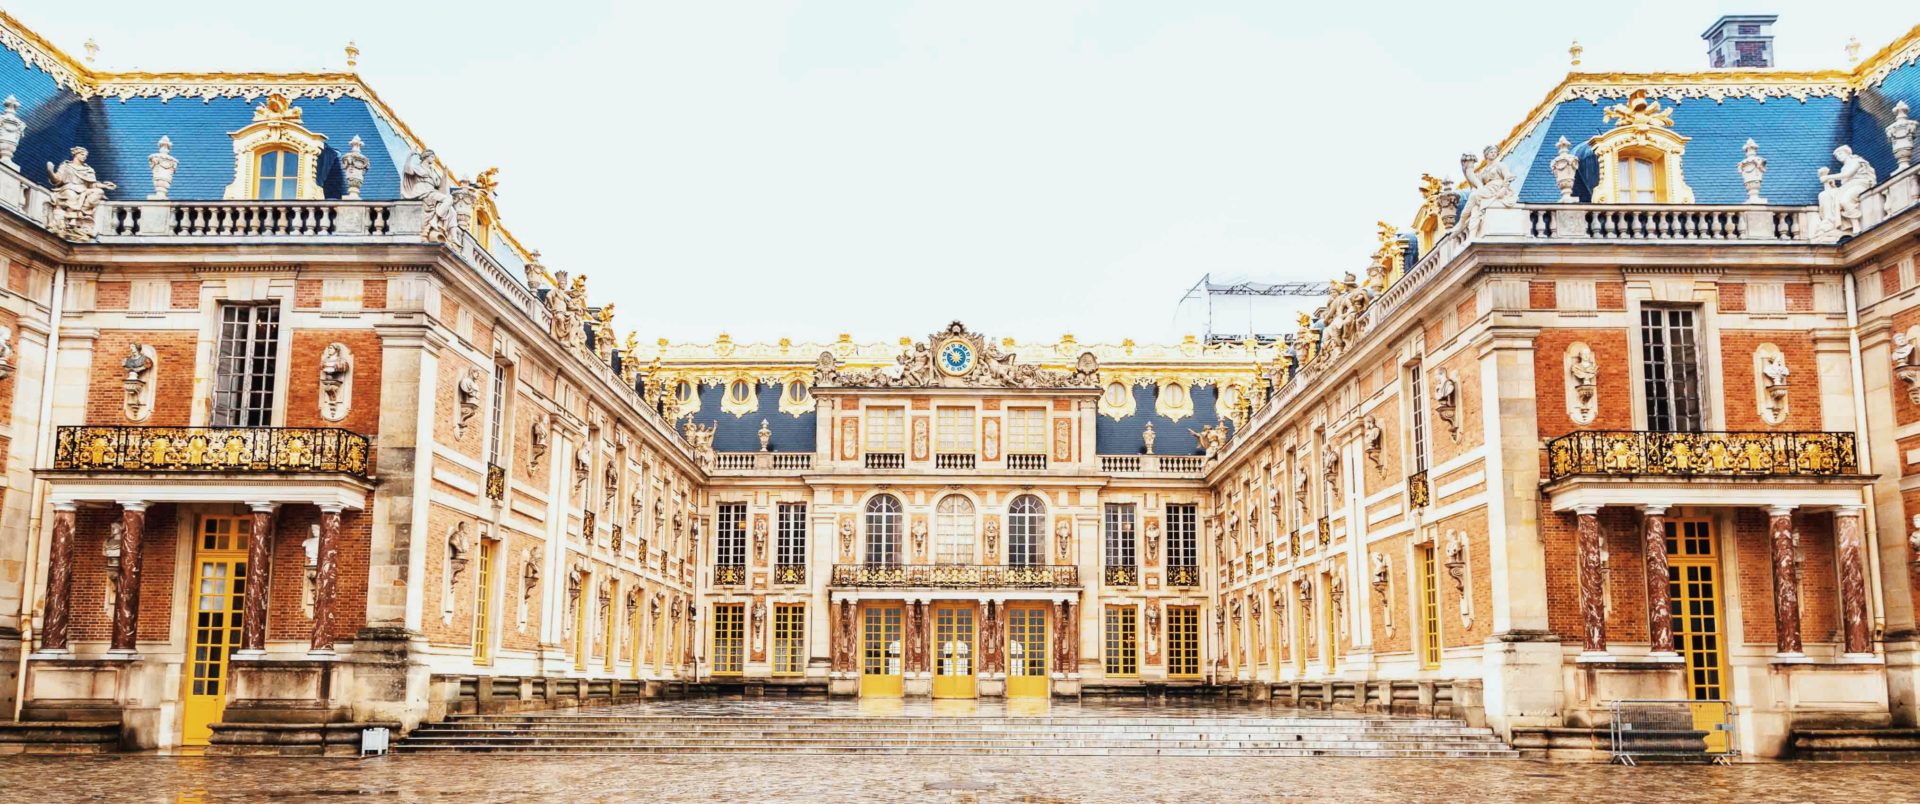 Palácio de Versalhes - onde fica, o que foi e qual sua importância?